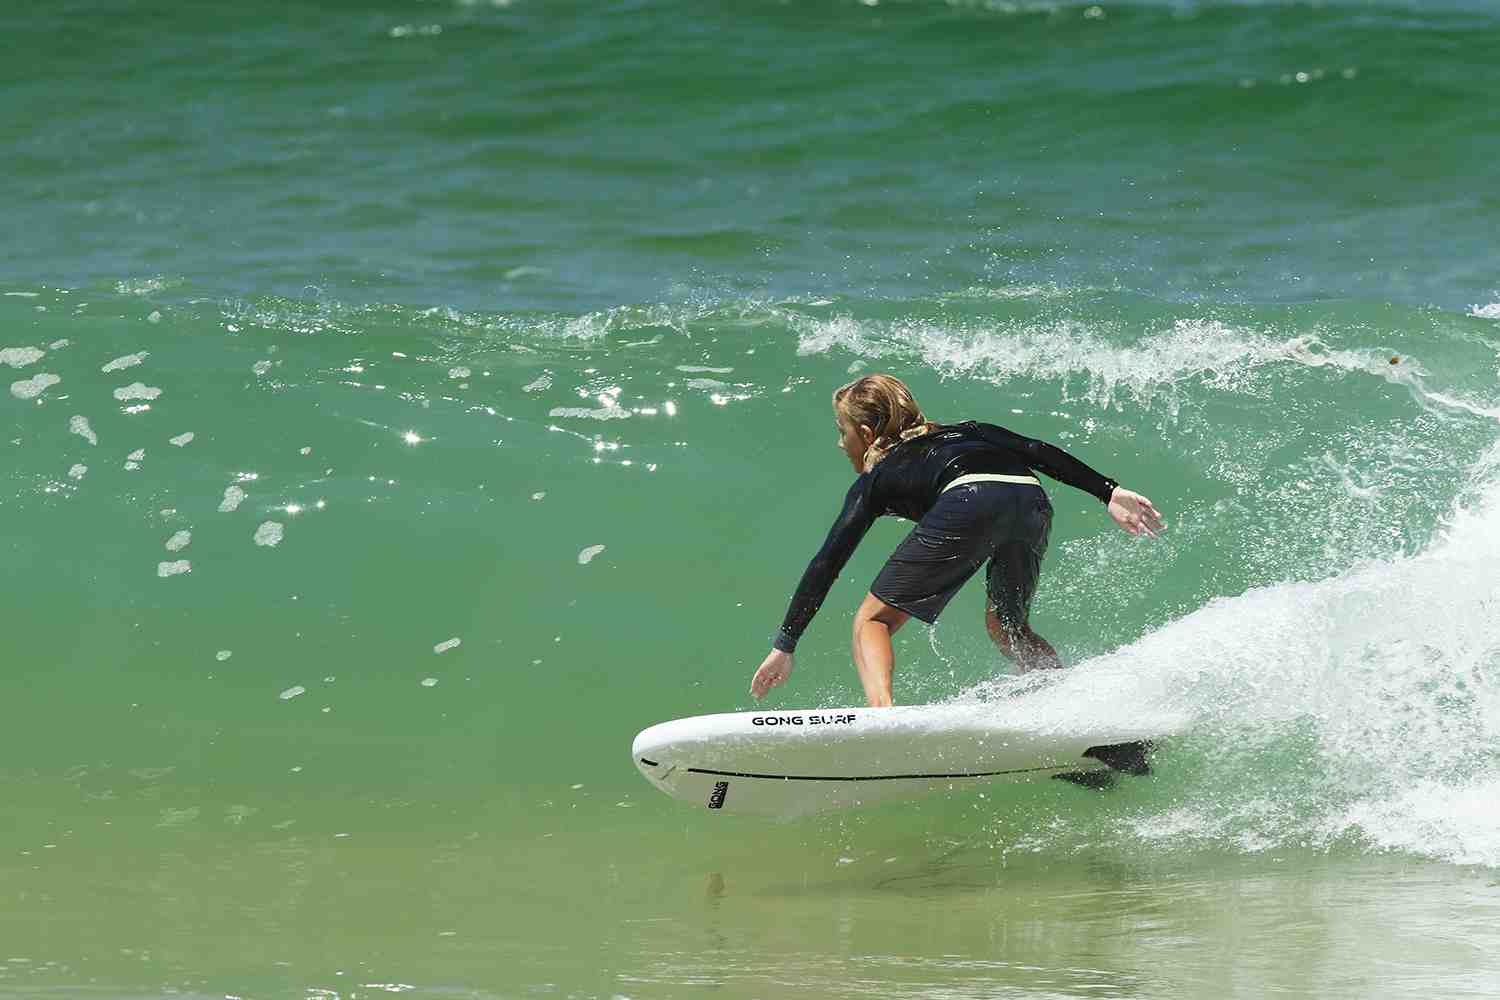 Quelle taille de planche de surf intermédiaire ?